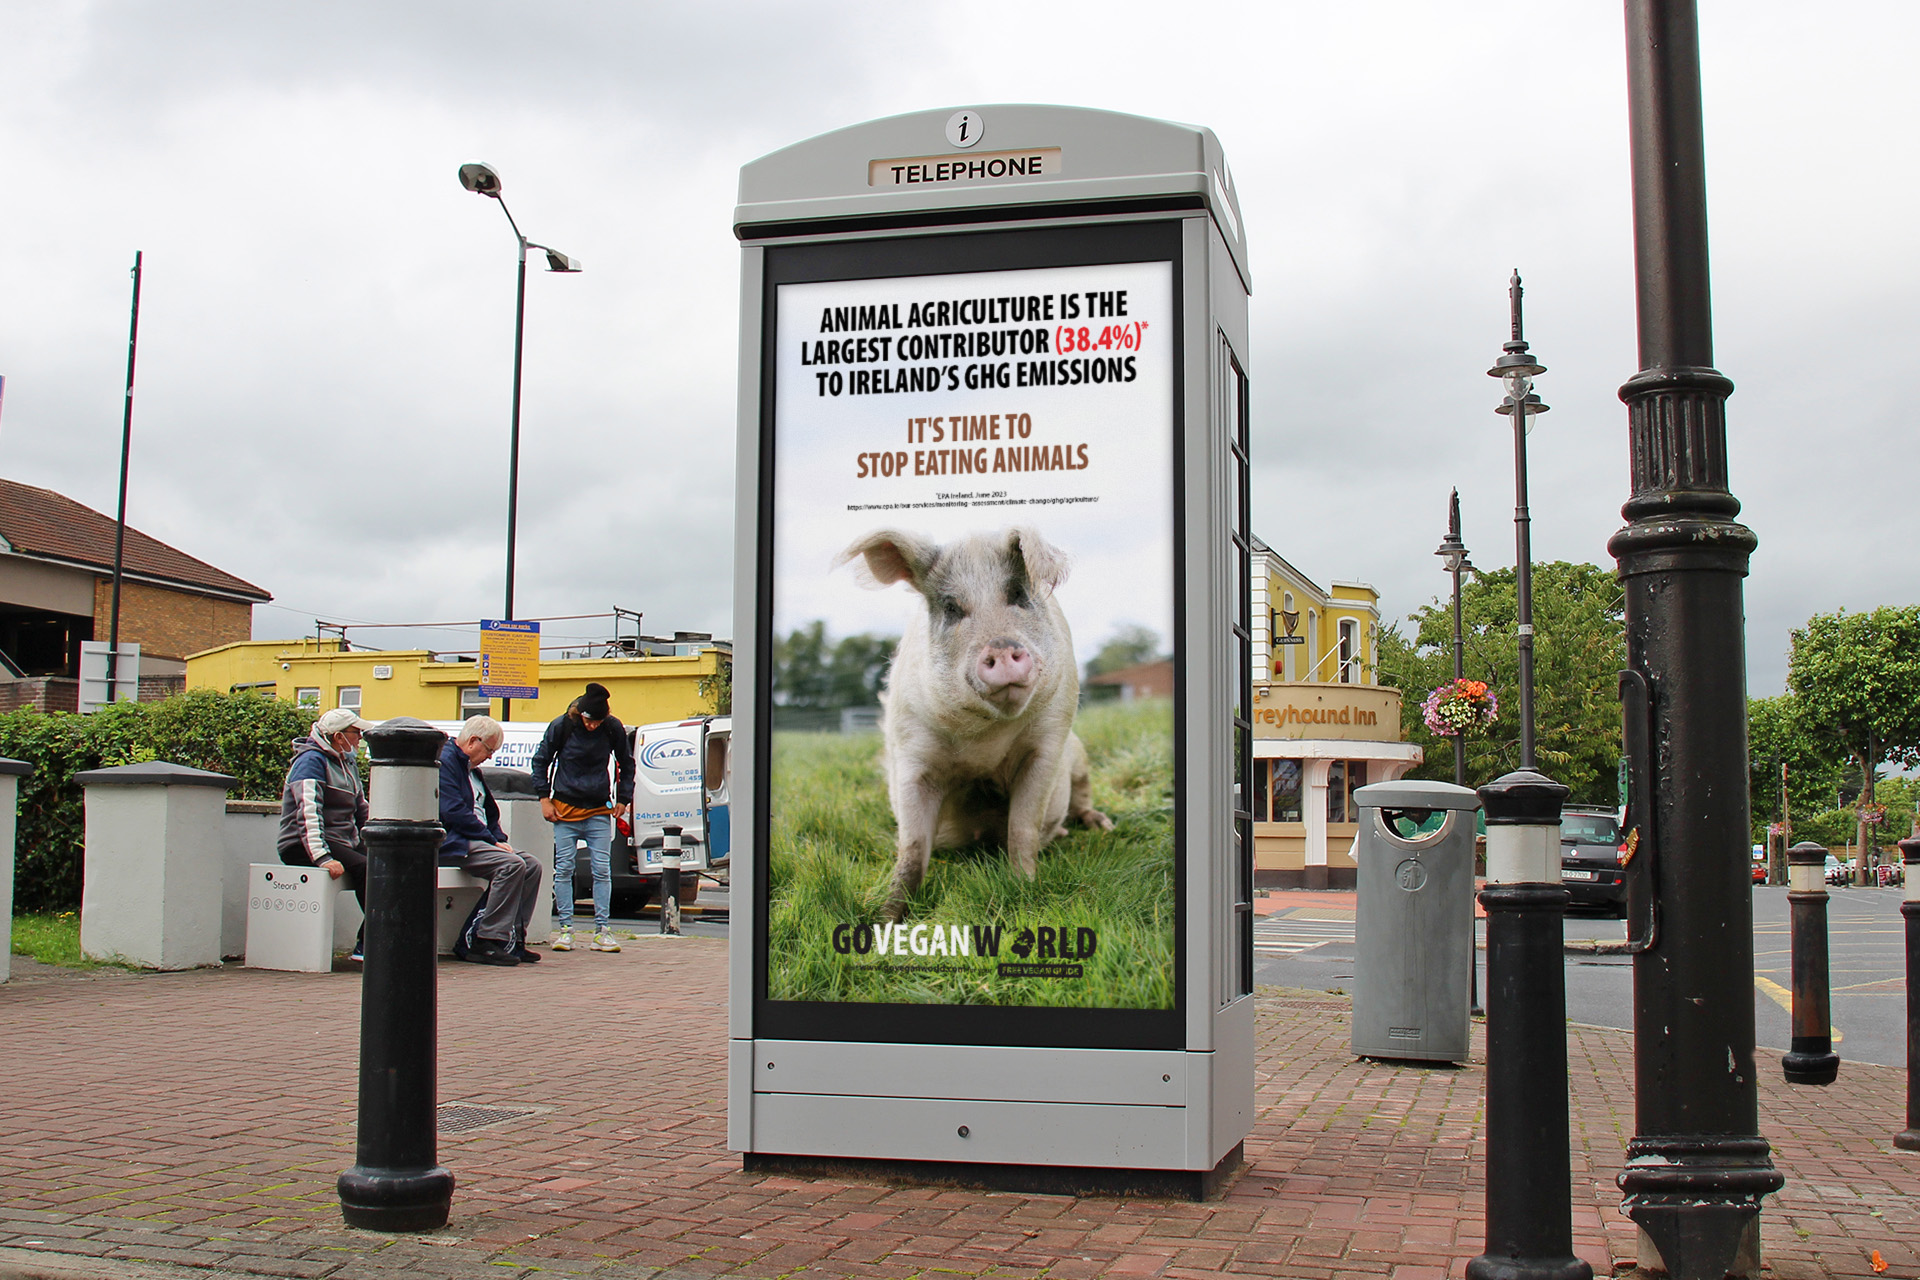 Go Vegan World - Public Vegan Advertising Campaign